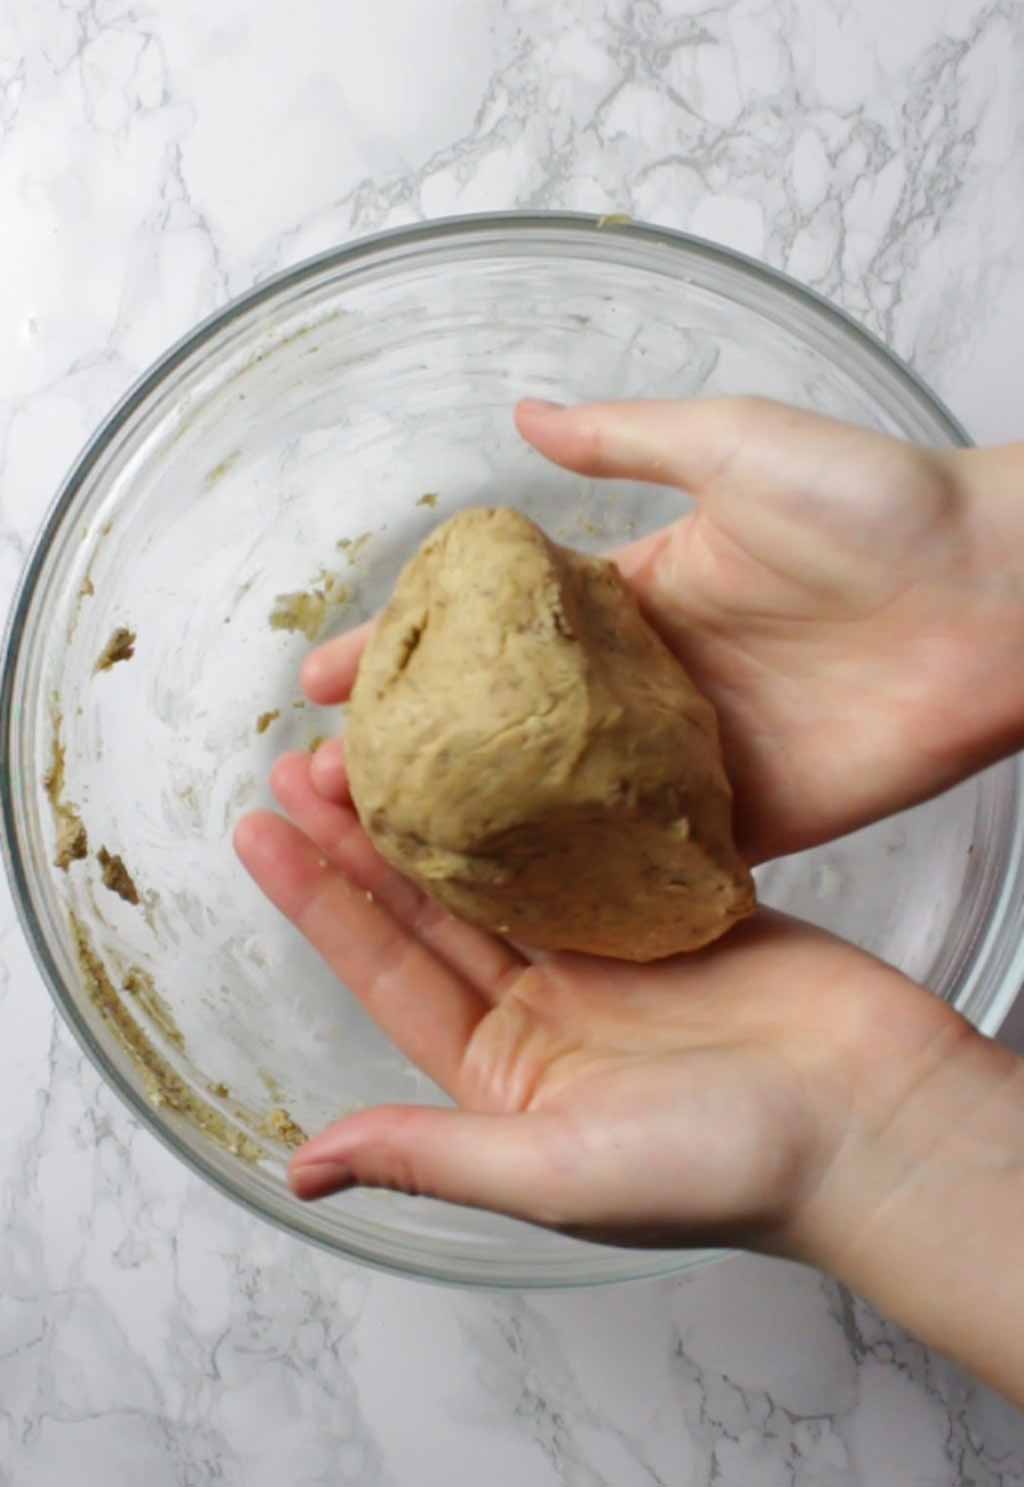 Hands Holding A Ball Of Dough